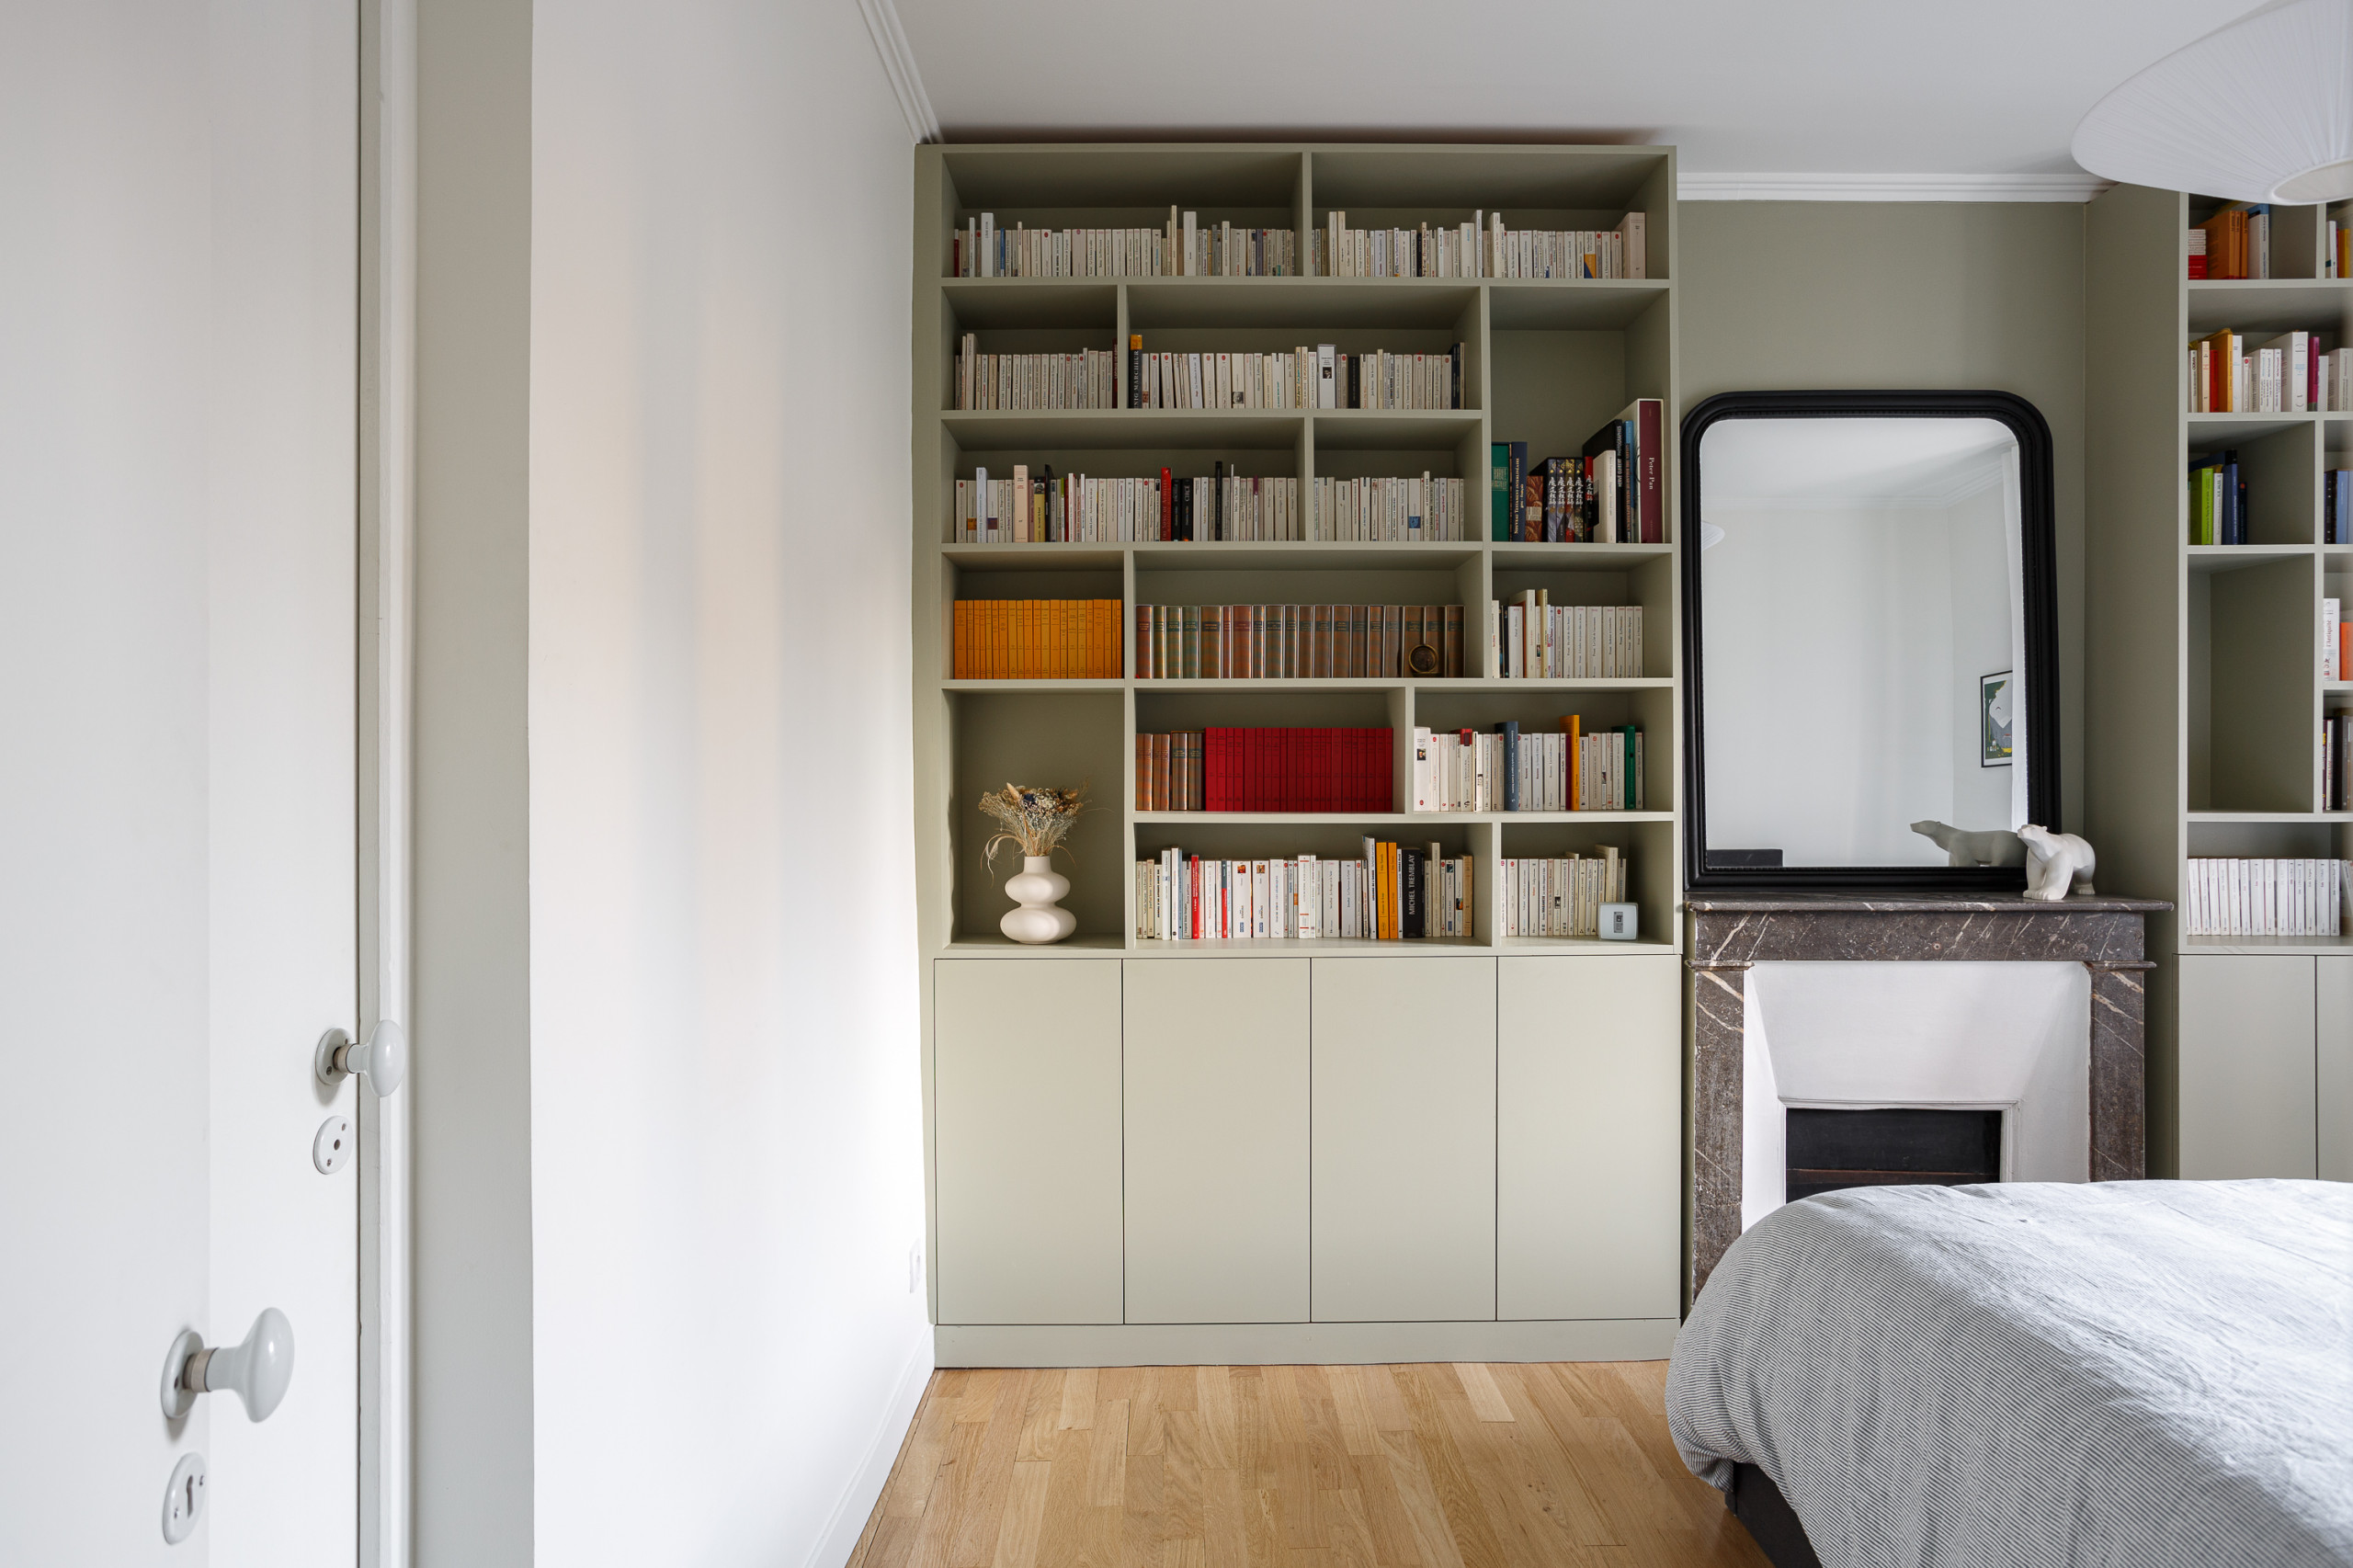 Une chambre à coucher rénovée avec style : la bibliothèque comme élément central